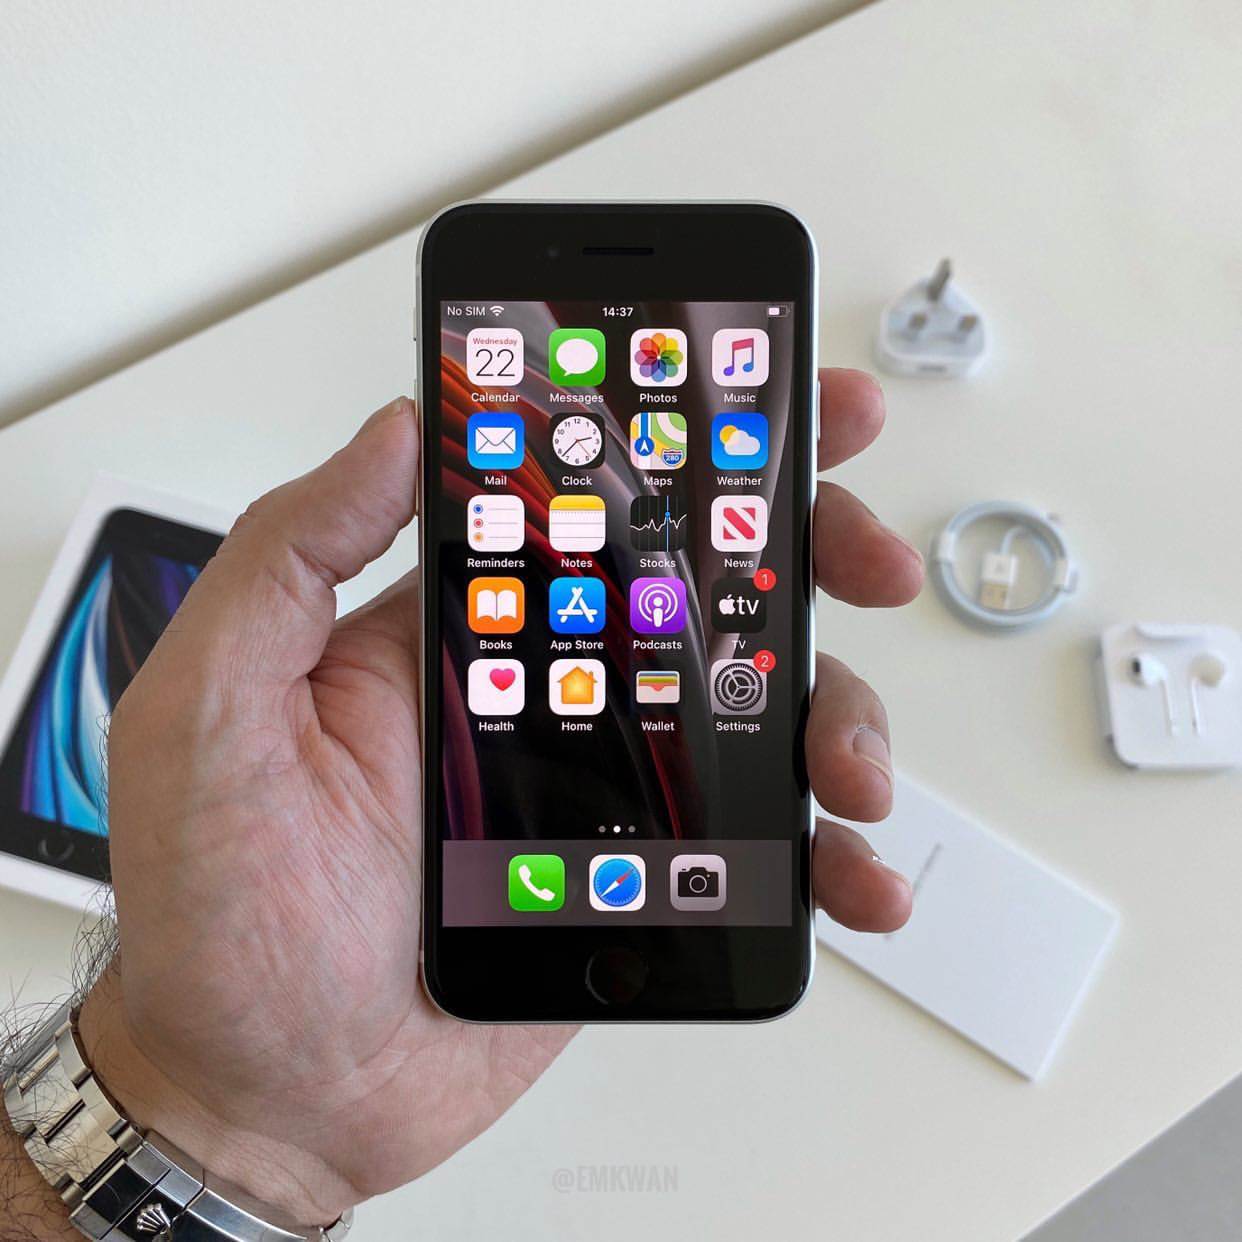 W sieci pojawił się pierwszy unboxing iPhone SE 2020 polecane, ciekawostki Wideo, Unboxing, rozpakowanie iPhone se 2020, iPhone SE 2020, Apple  Popularny bloger YouTube, Emkwan, udostępnił na swoim kanale YouTube film przedstawiający rozpakowania nowego iPhone'a SE, a także pierwsze wrażenia na temat najbardziej przystępnego cenowo smartfona Apple. SE3